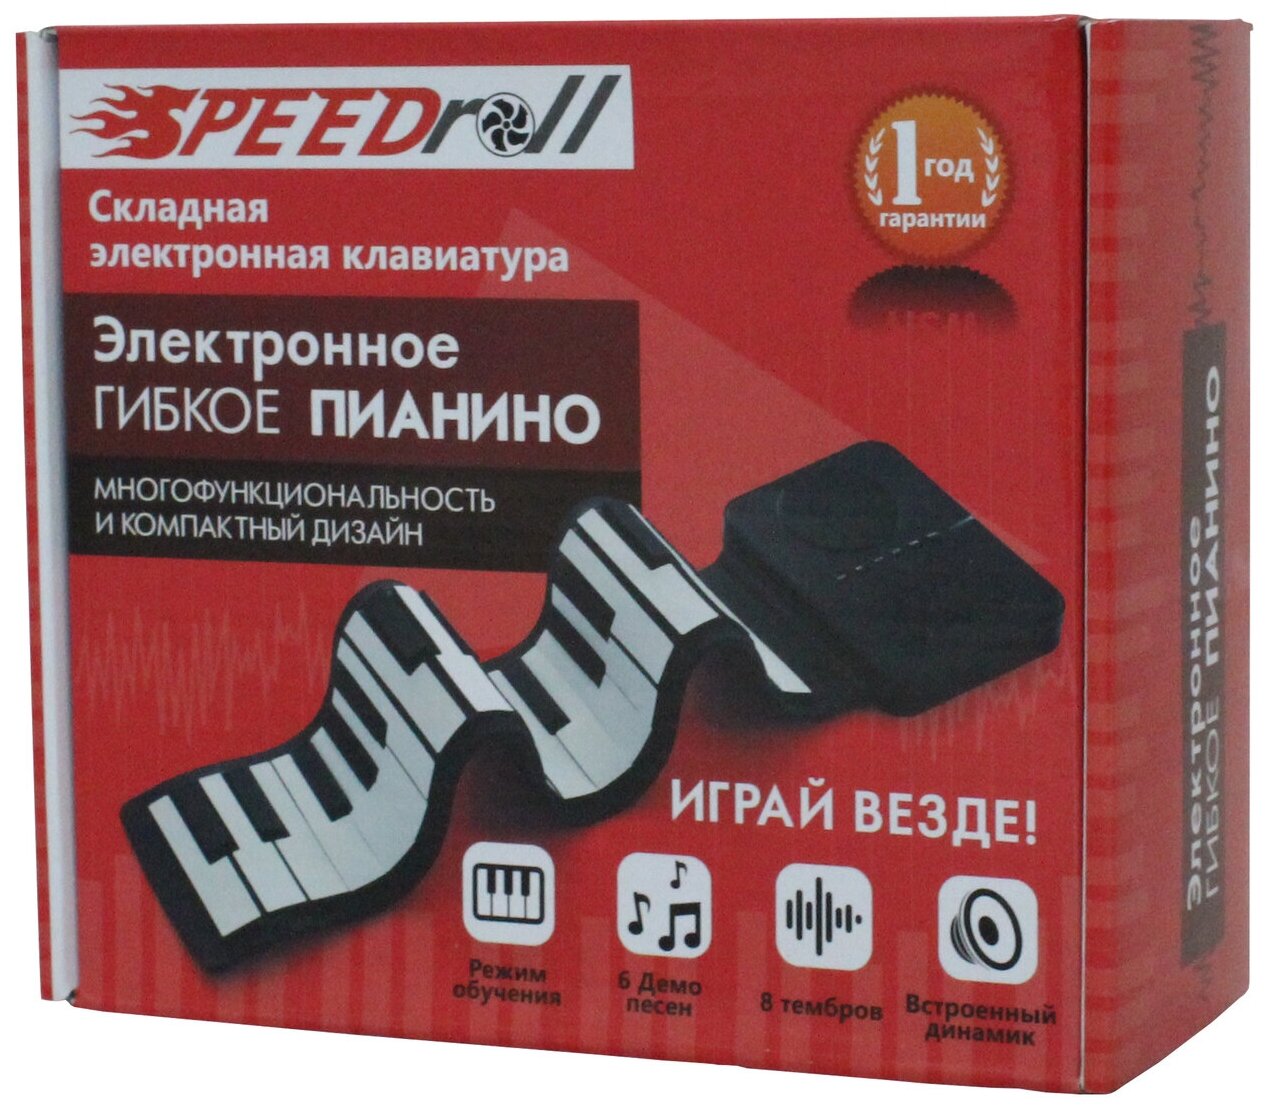 Синтезатор SpeedRoll S3037